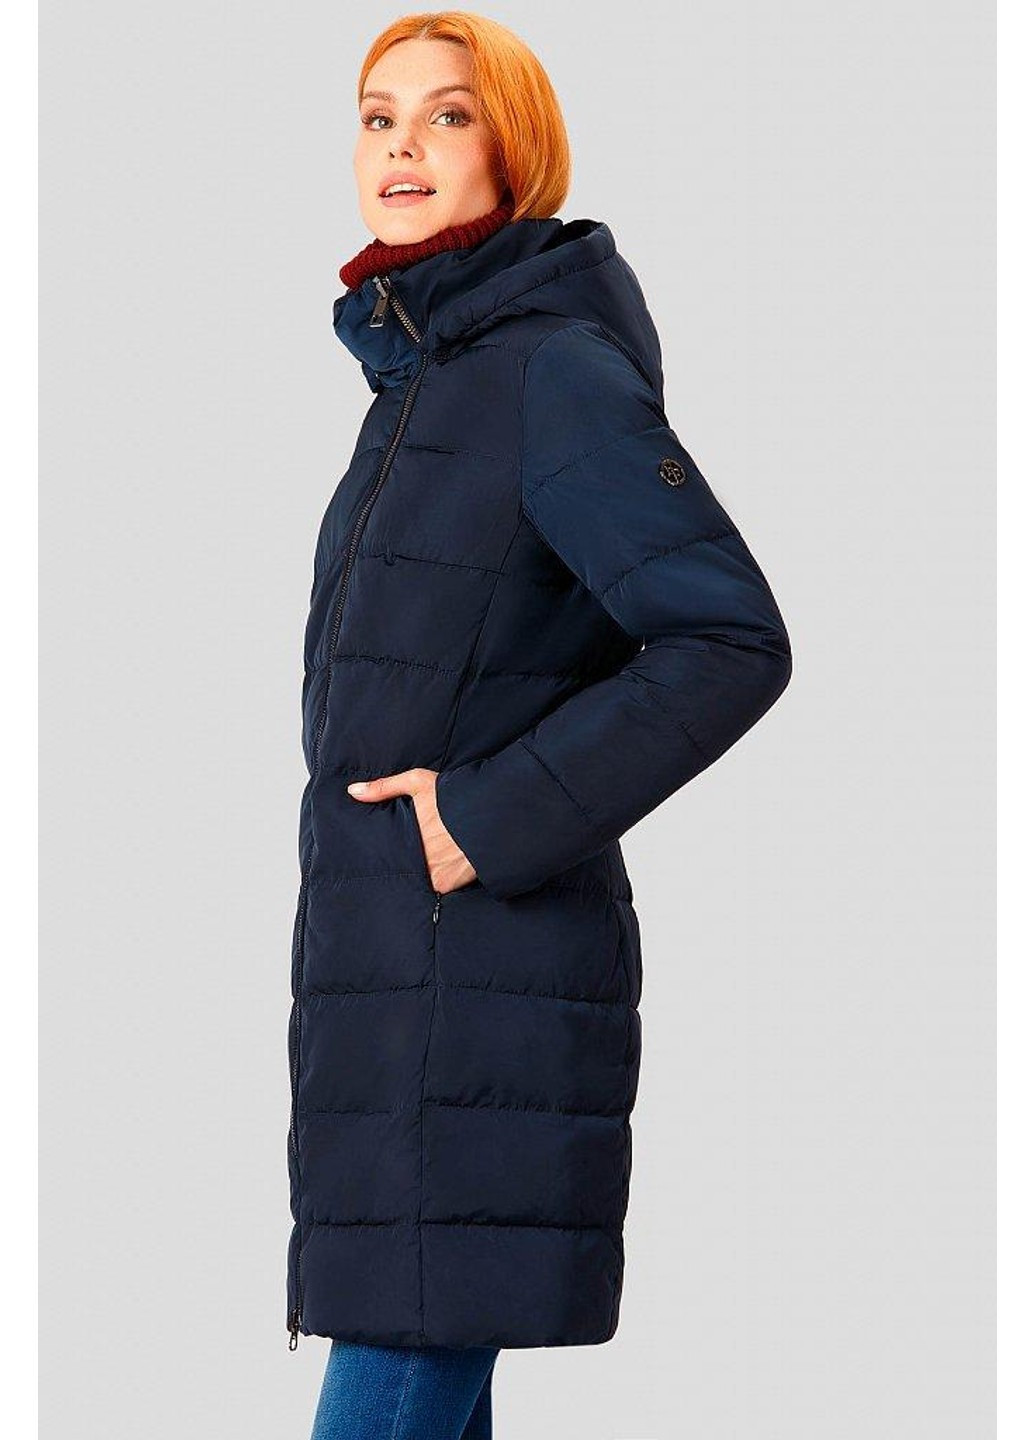 Темно-синяя зимняя зимняя куртка a18-11027-101 Finn Flare